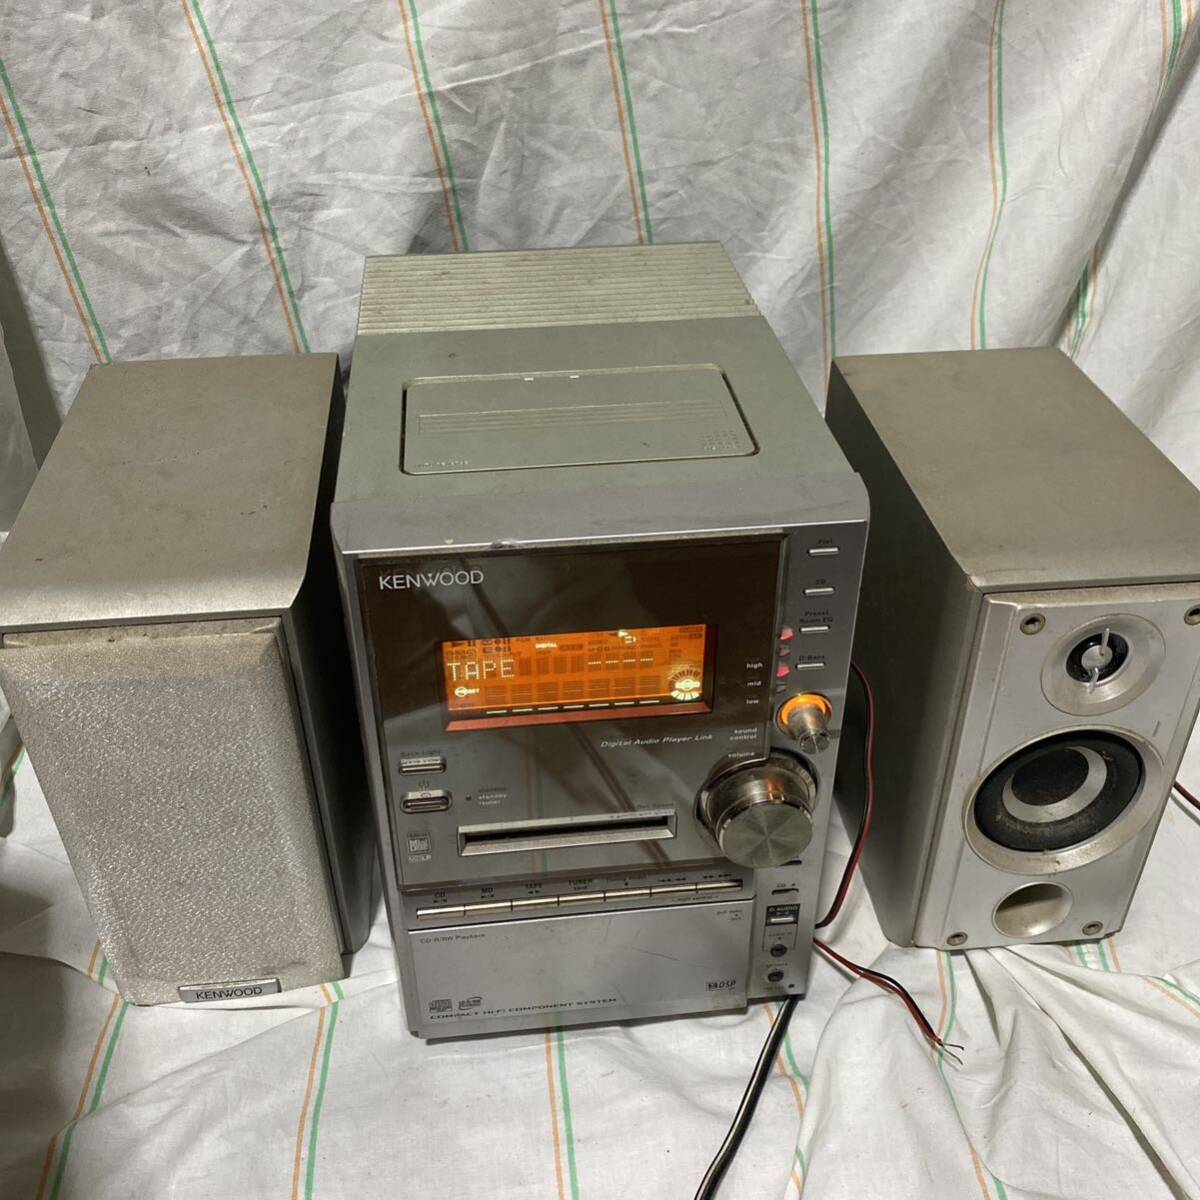 [T3]KENWOOD RXD-SV3MD CD/MD/ кассетная магнитола компонент Junk 